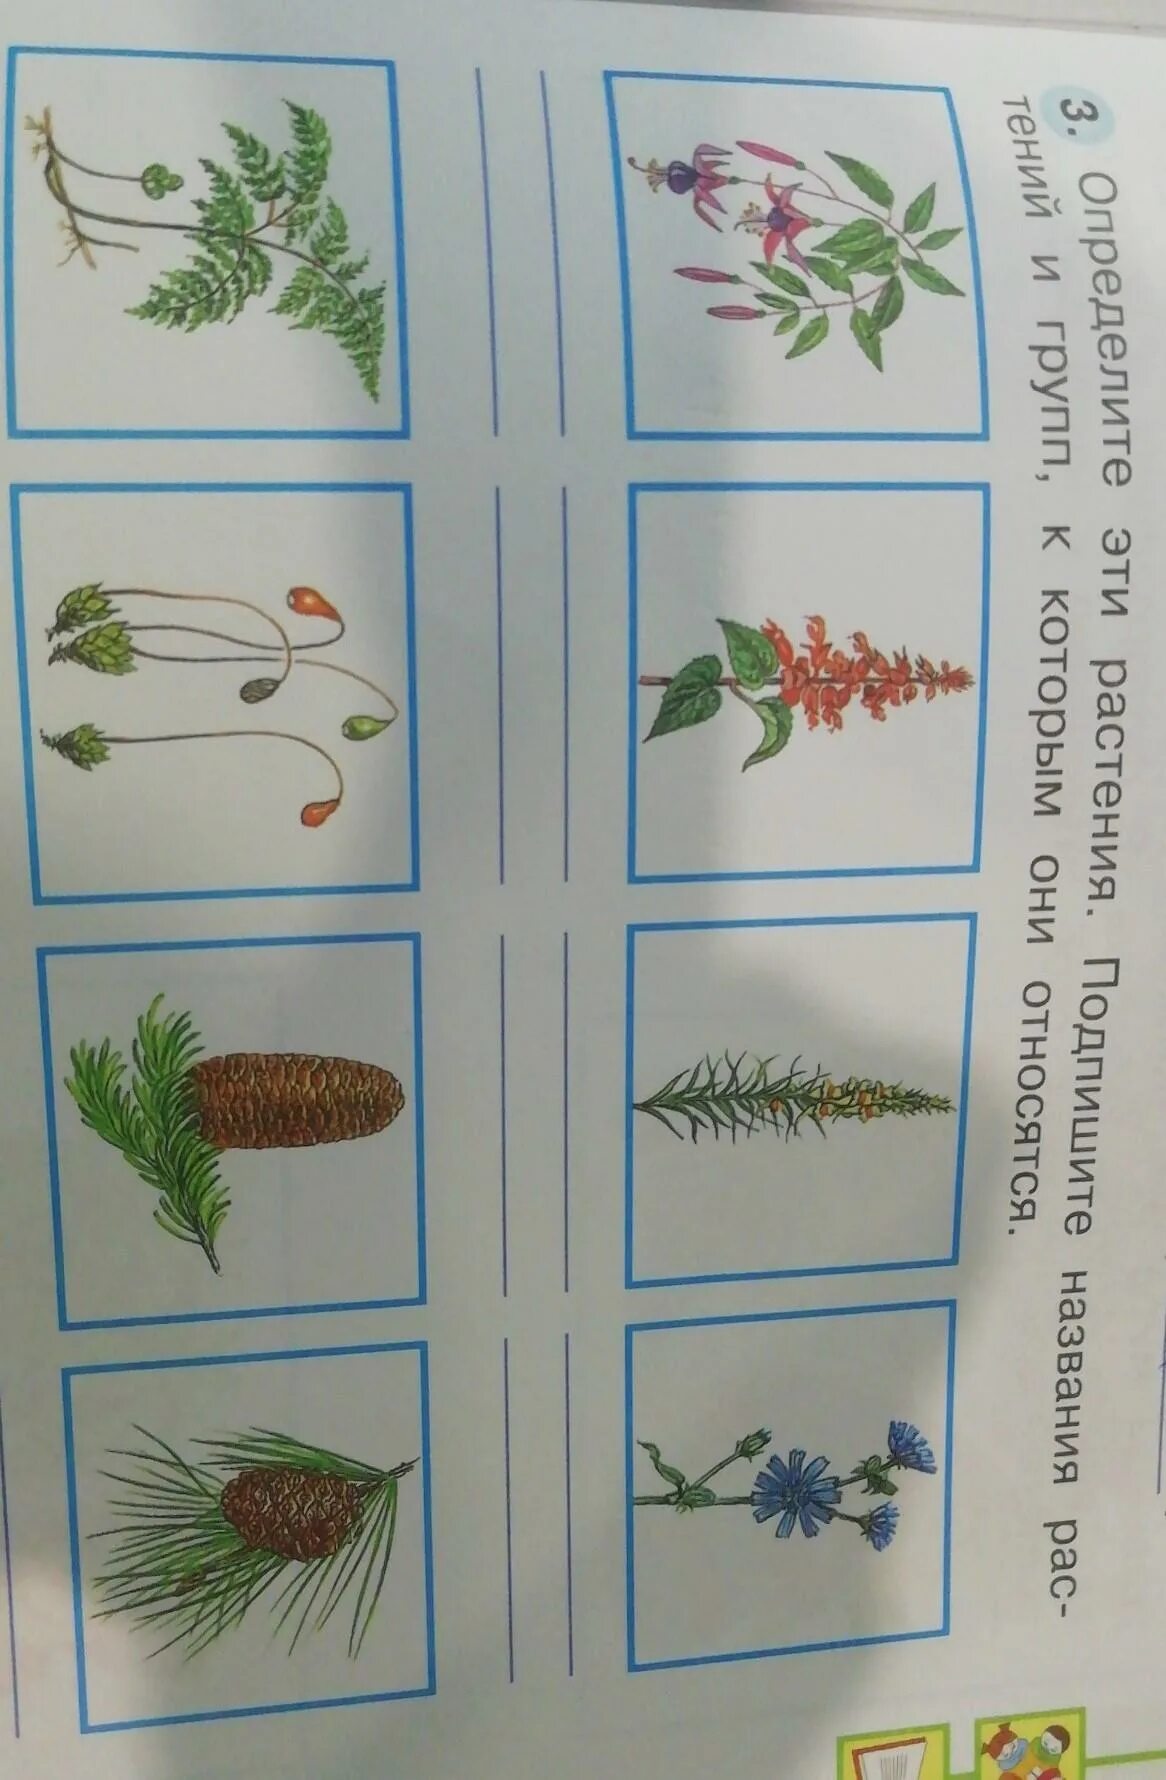 Определить растение. Определить растения по фотогалереи. Определить растение по картинке. Распознаватель растений.